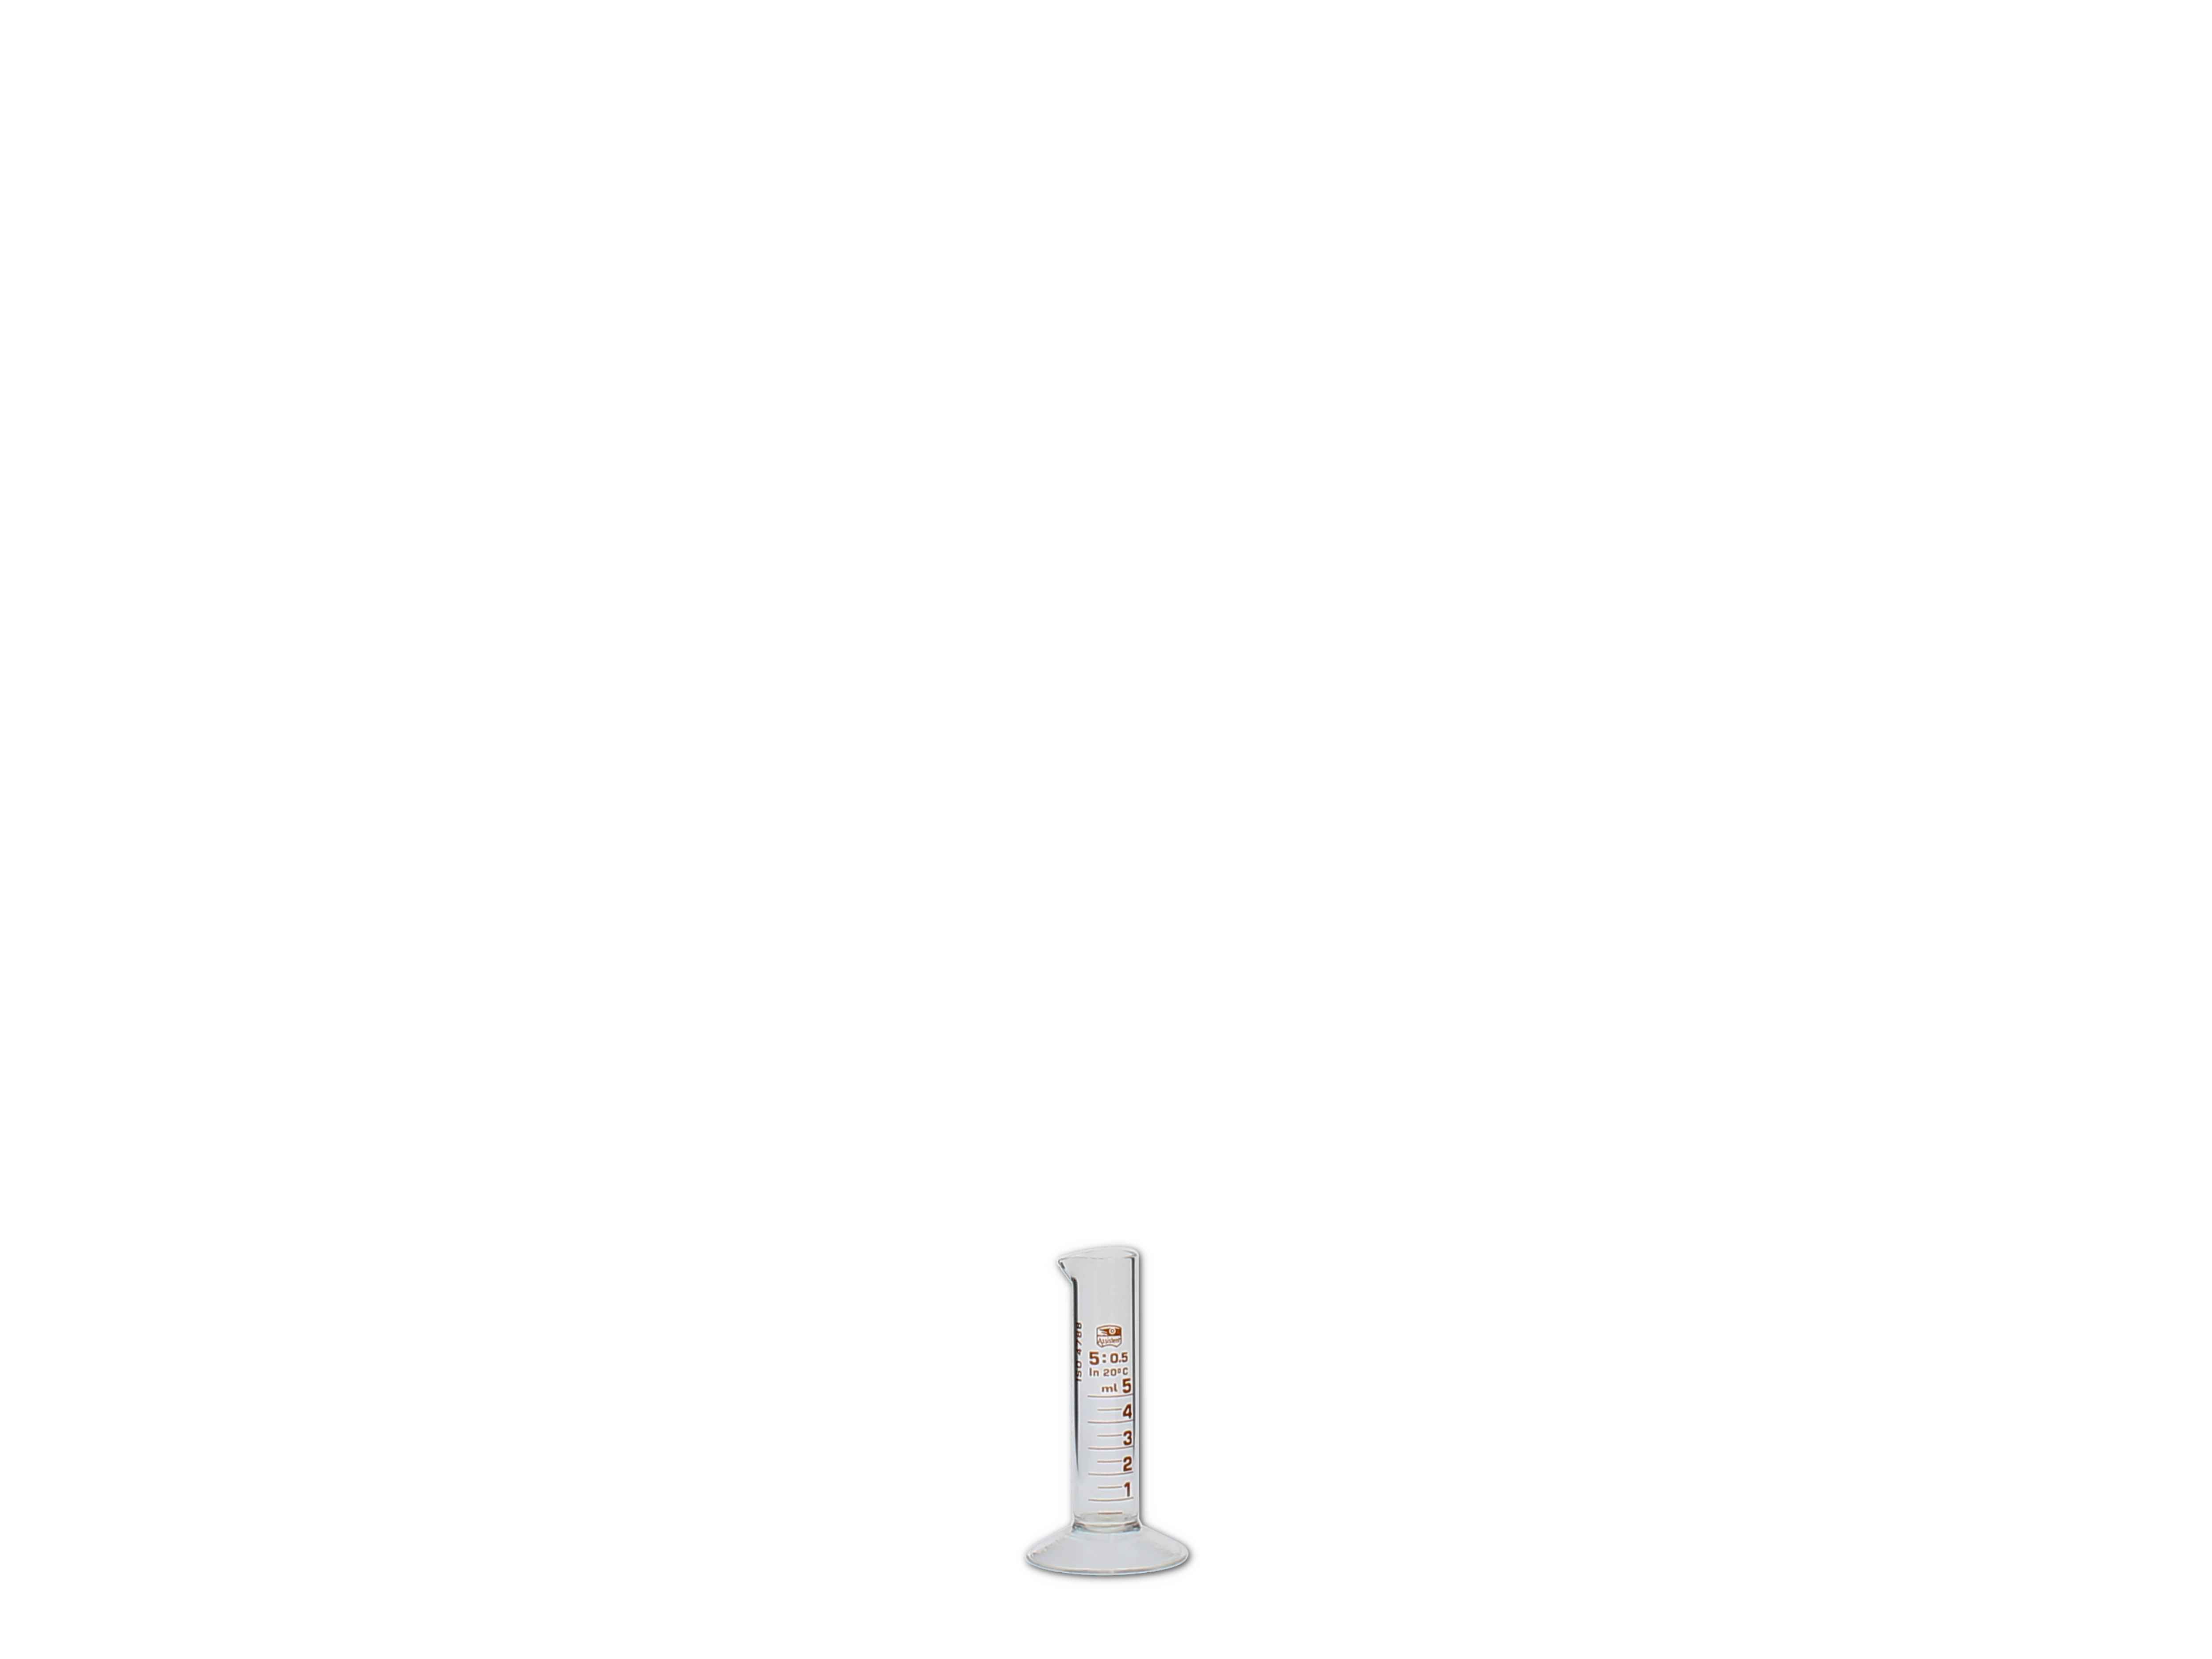    Messzylinder, Glas, graduiert - 5ml (niedere Form)